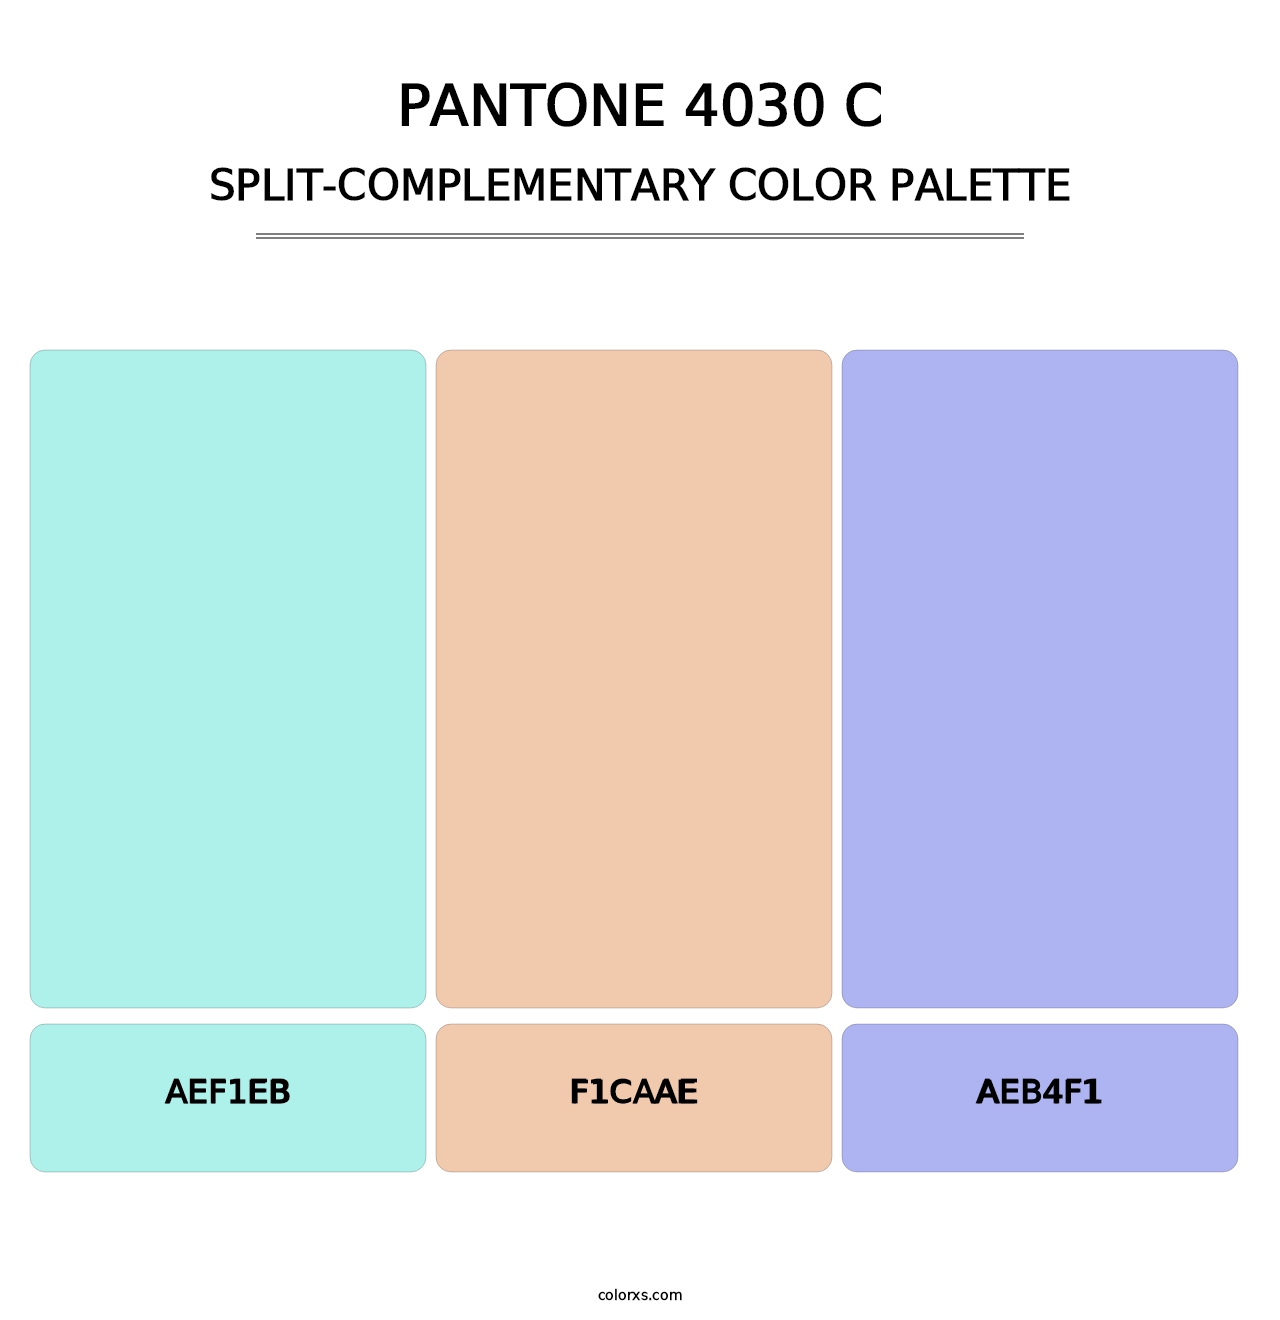 PANTONE 4030 C - Split-Complementary Color Palette